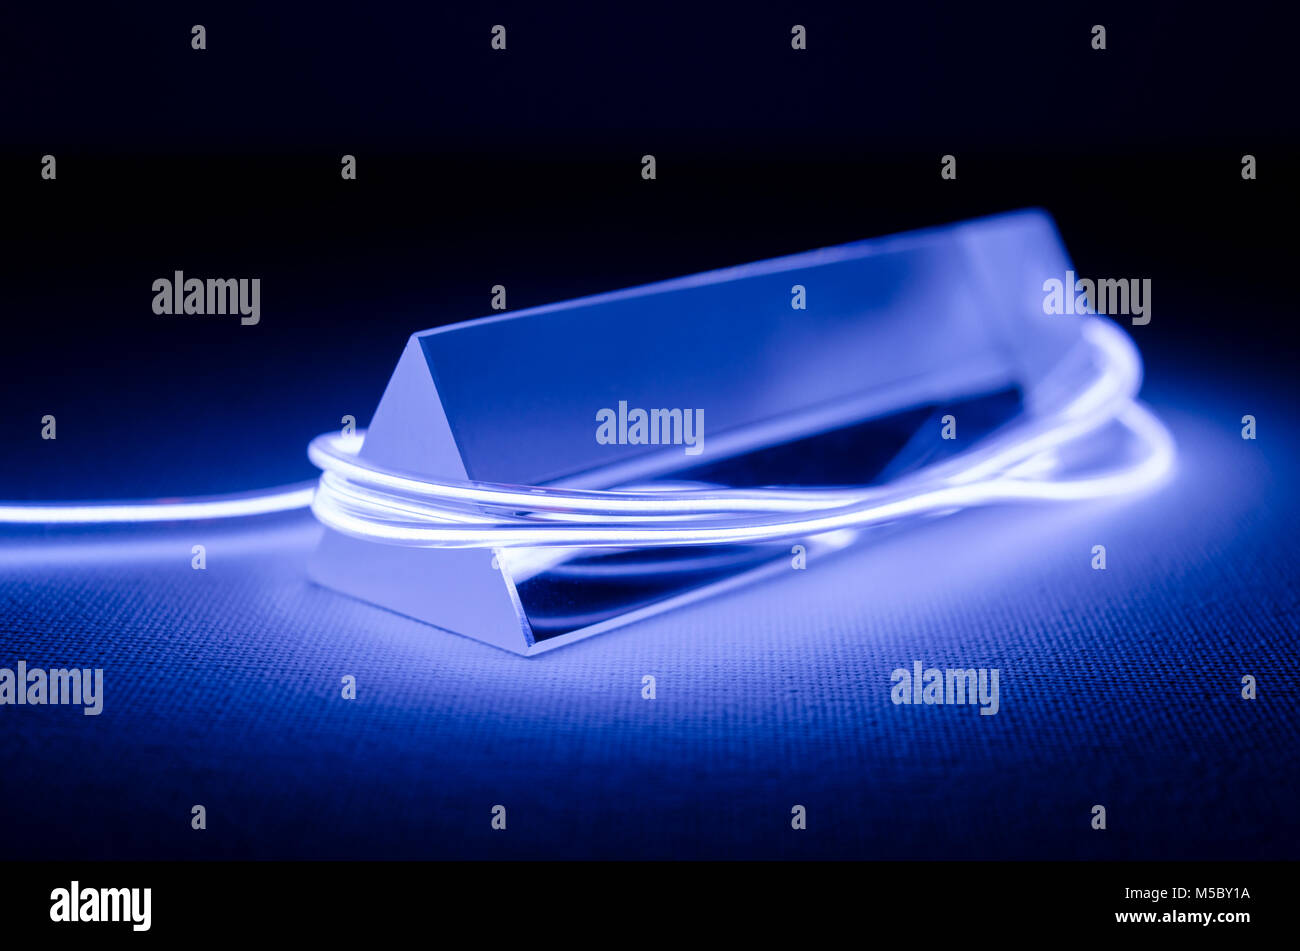 Un estudio bodegón fotografía de un prisma de vidrio triangular con iluminación de neón abstractos en violeta Foto de stock